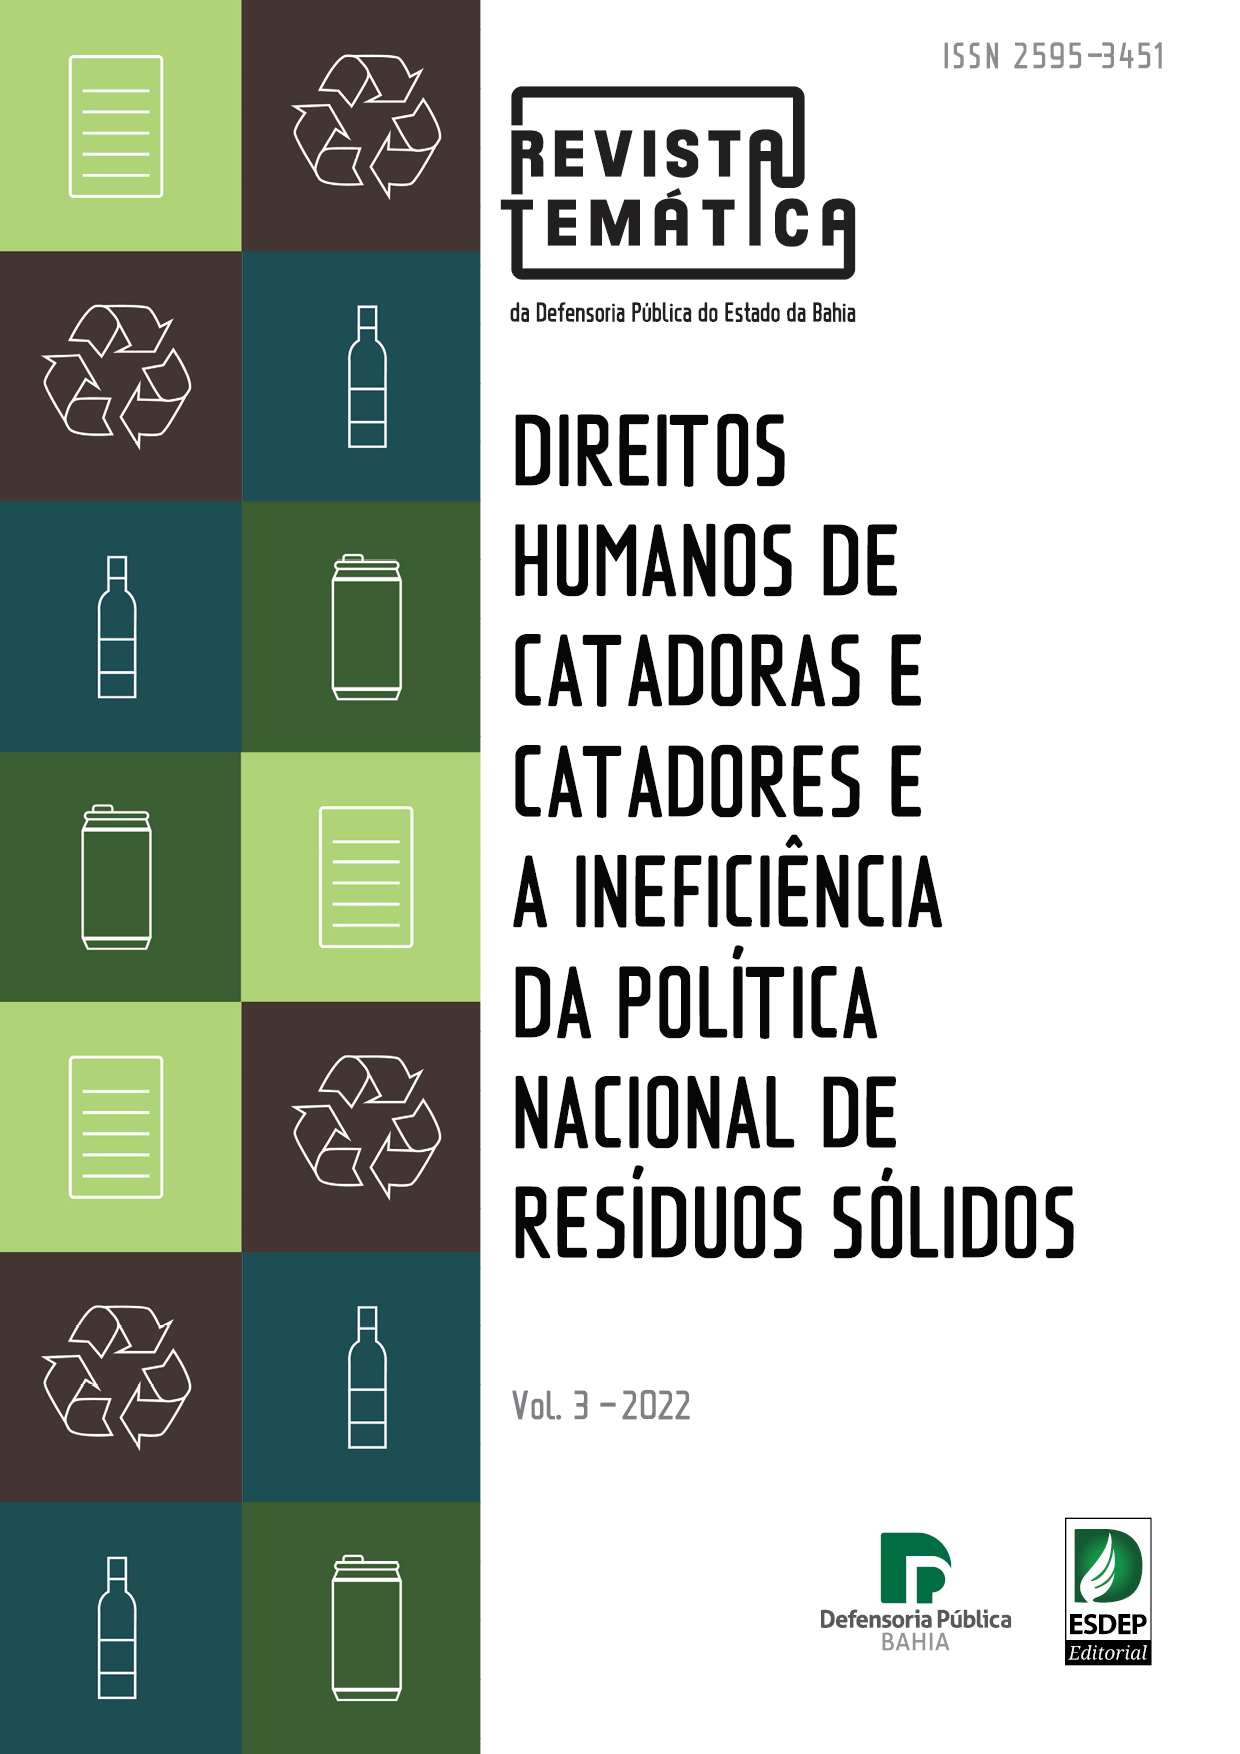 Revista Temática da Defensoria Publica v. 3 – Direitos Humanos de Catadoras e Catadores e a Ineficiência da política de Resíduos Sólidos